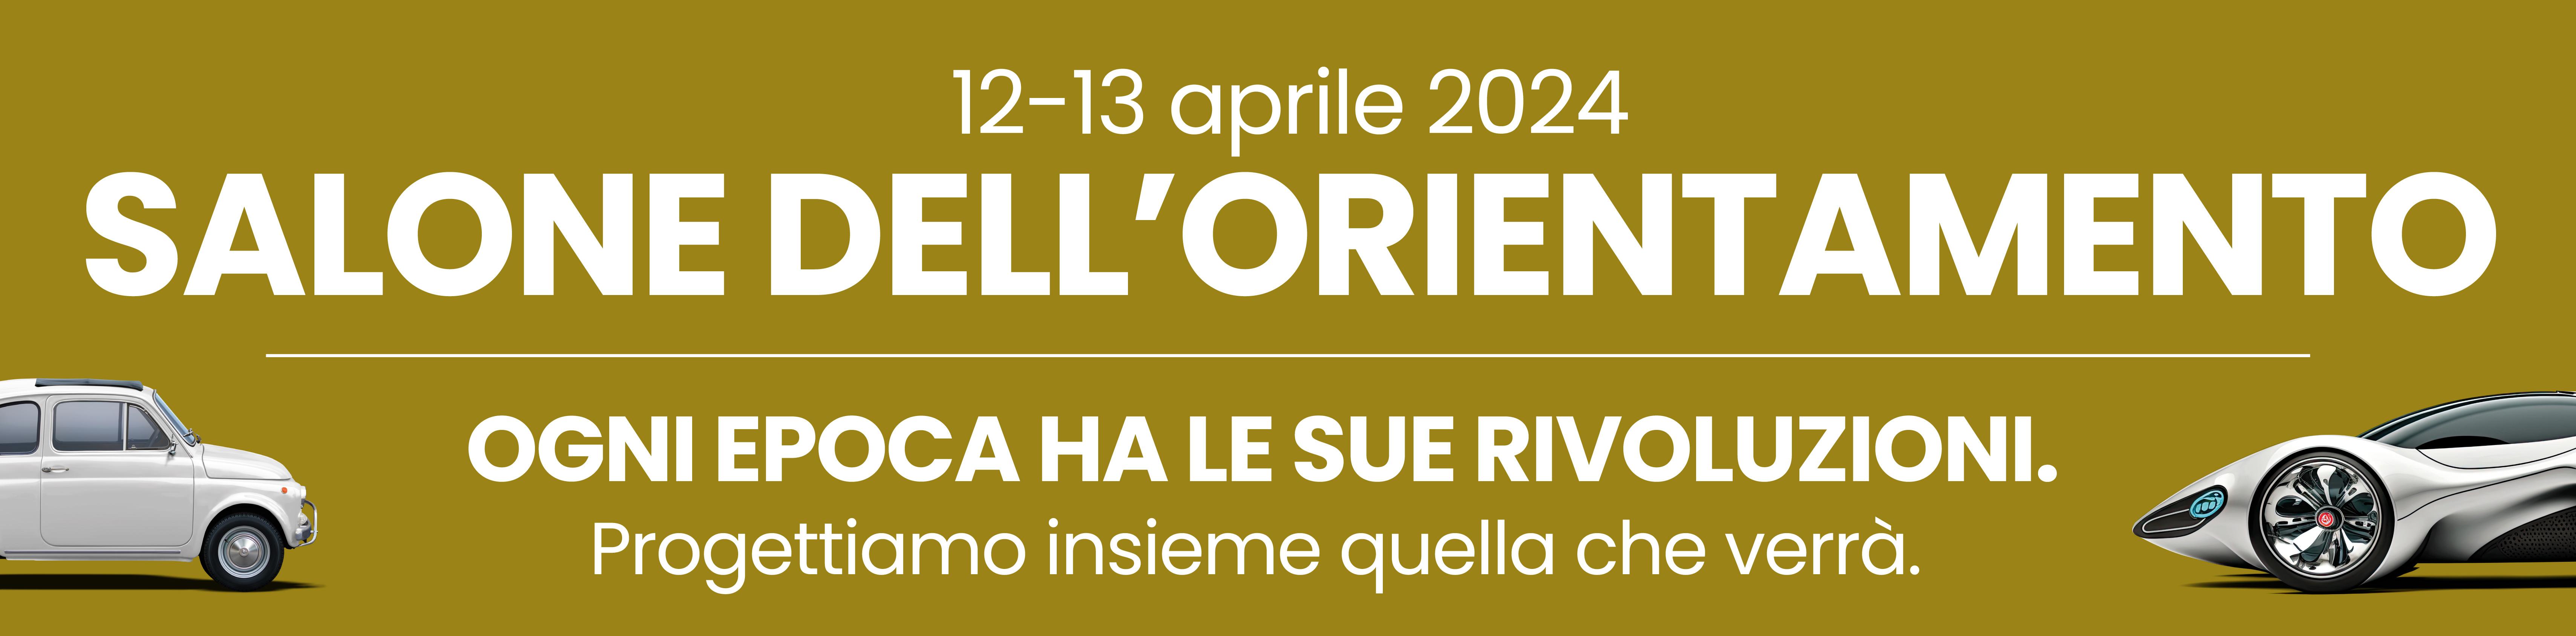 banner ita 2024 salone orienta